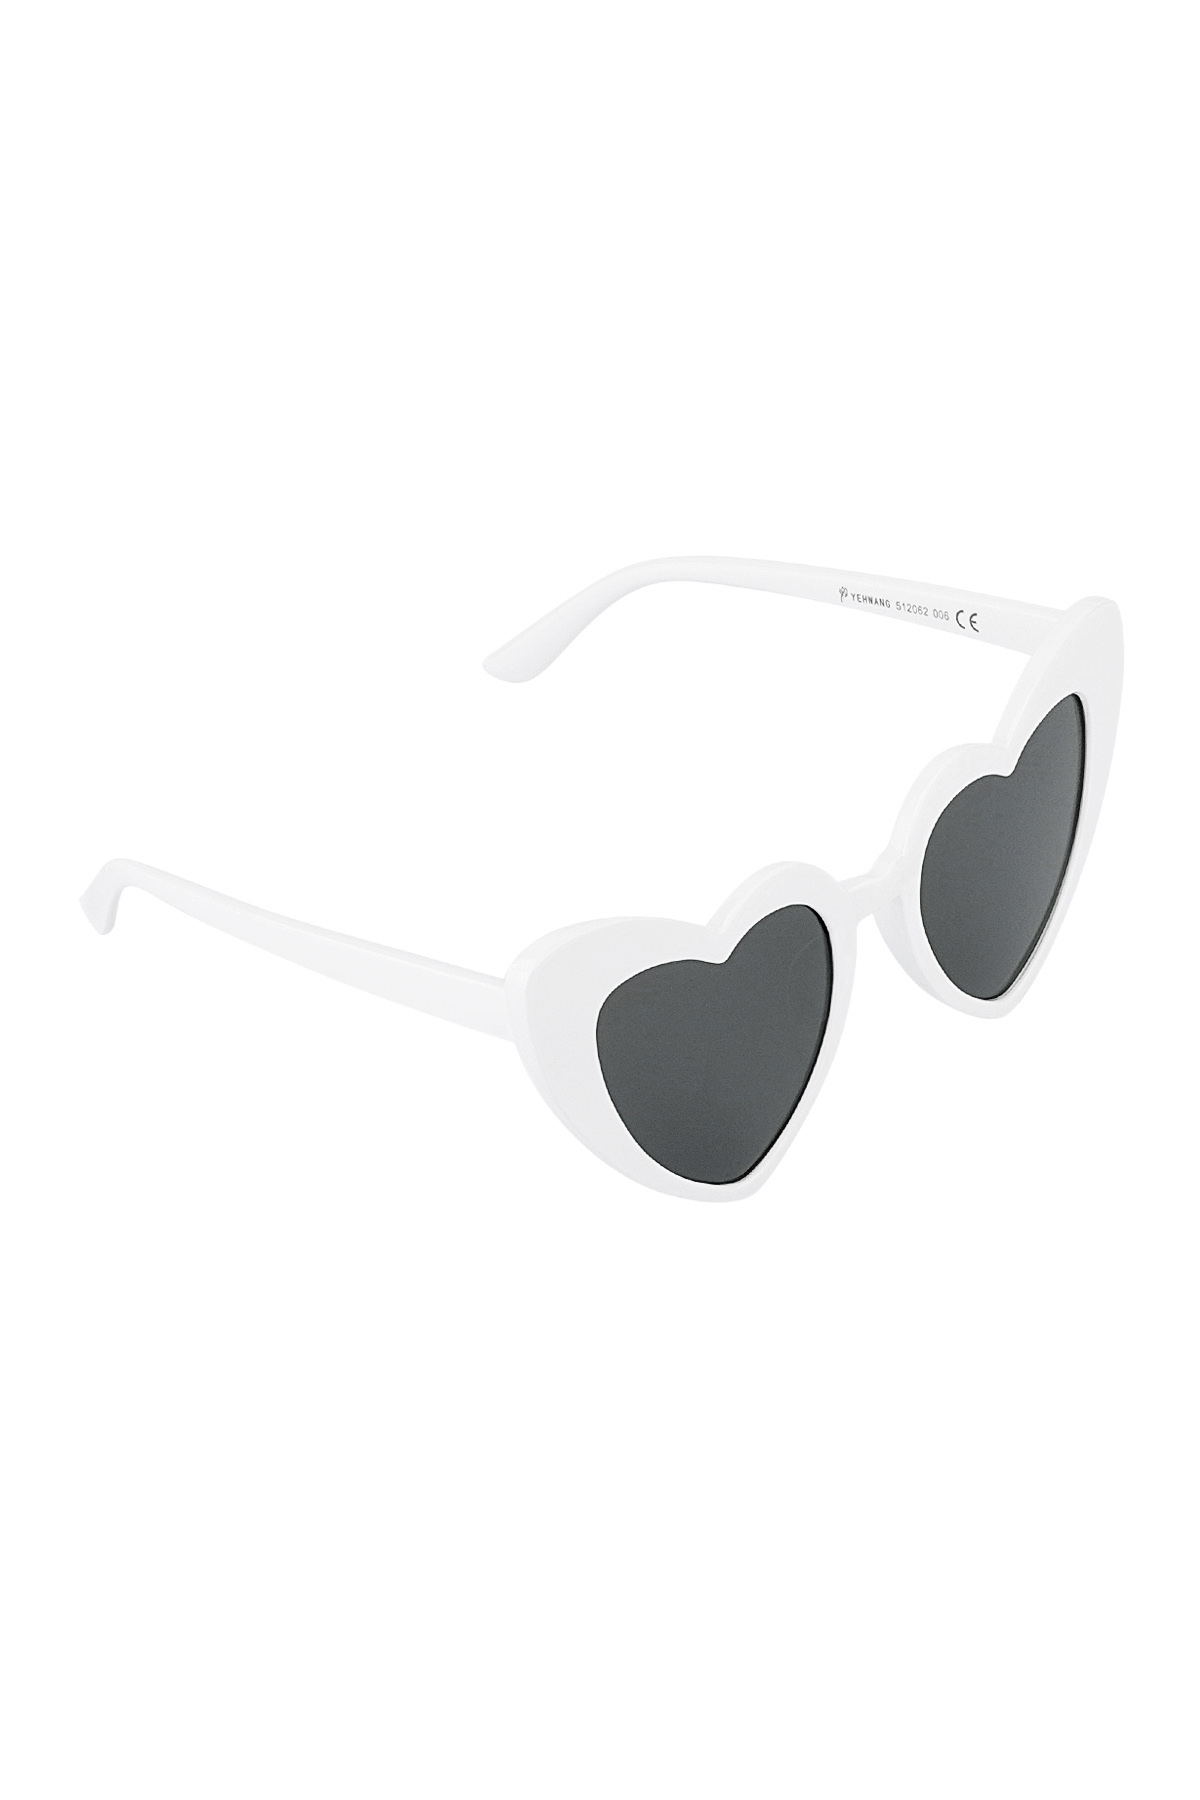 L'amore per gli occhiali da sole è nell'aria: in bianco e nero h5 